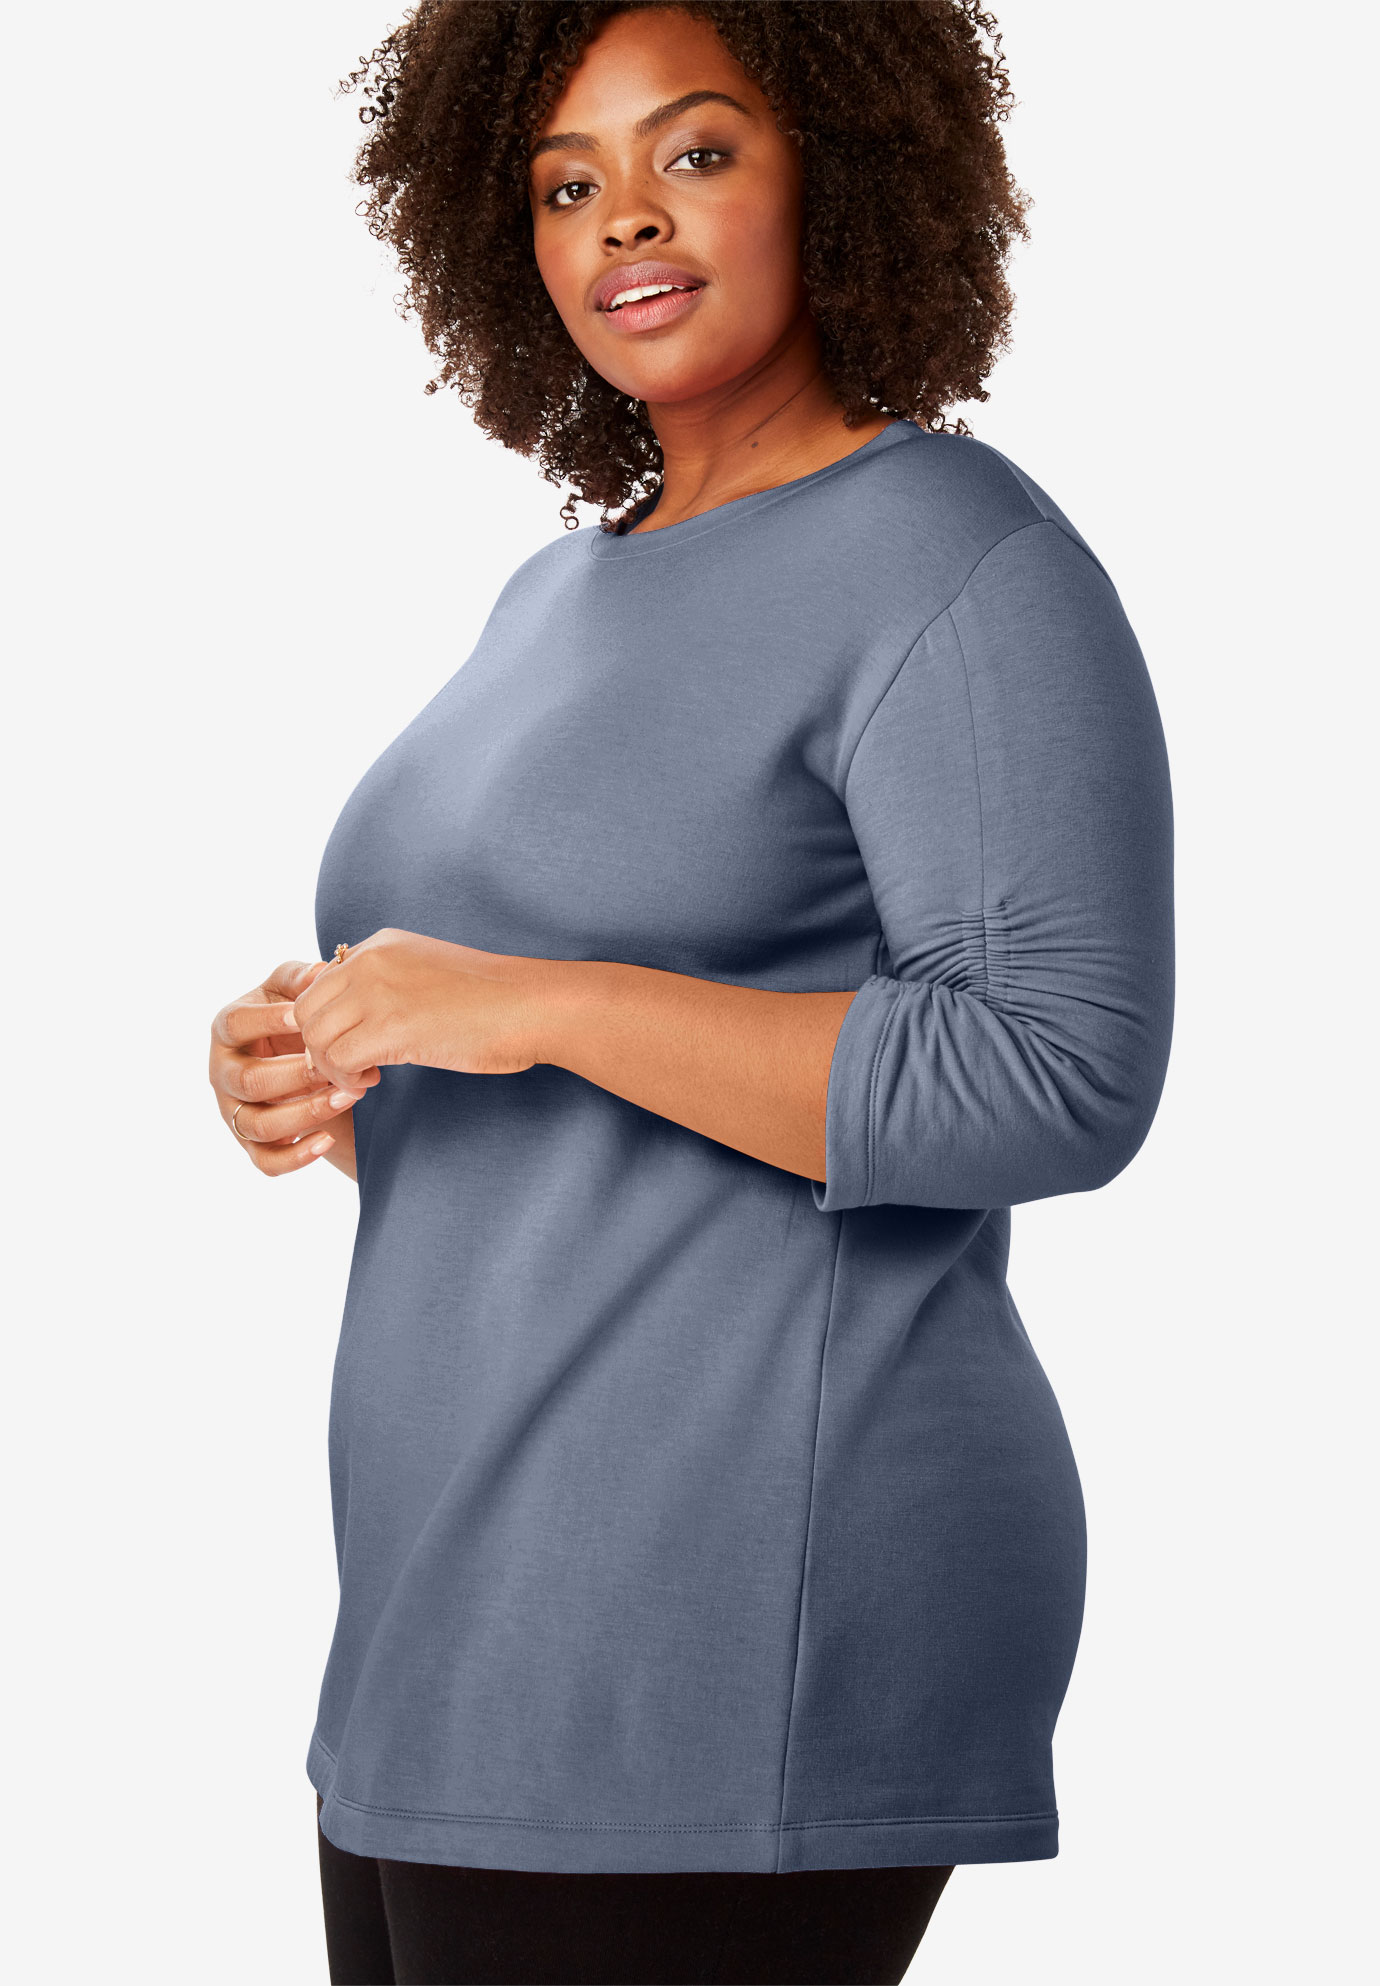 Shirred Sleeve Fleece Tunic| Plus Size Tops | Woman Within